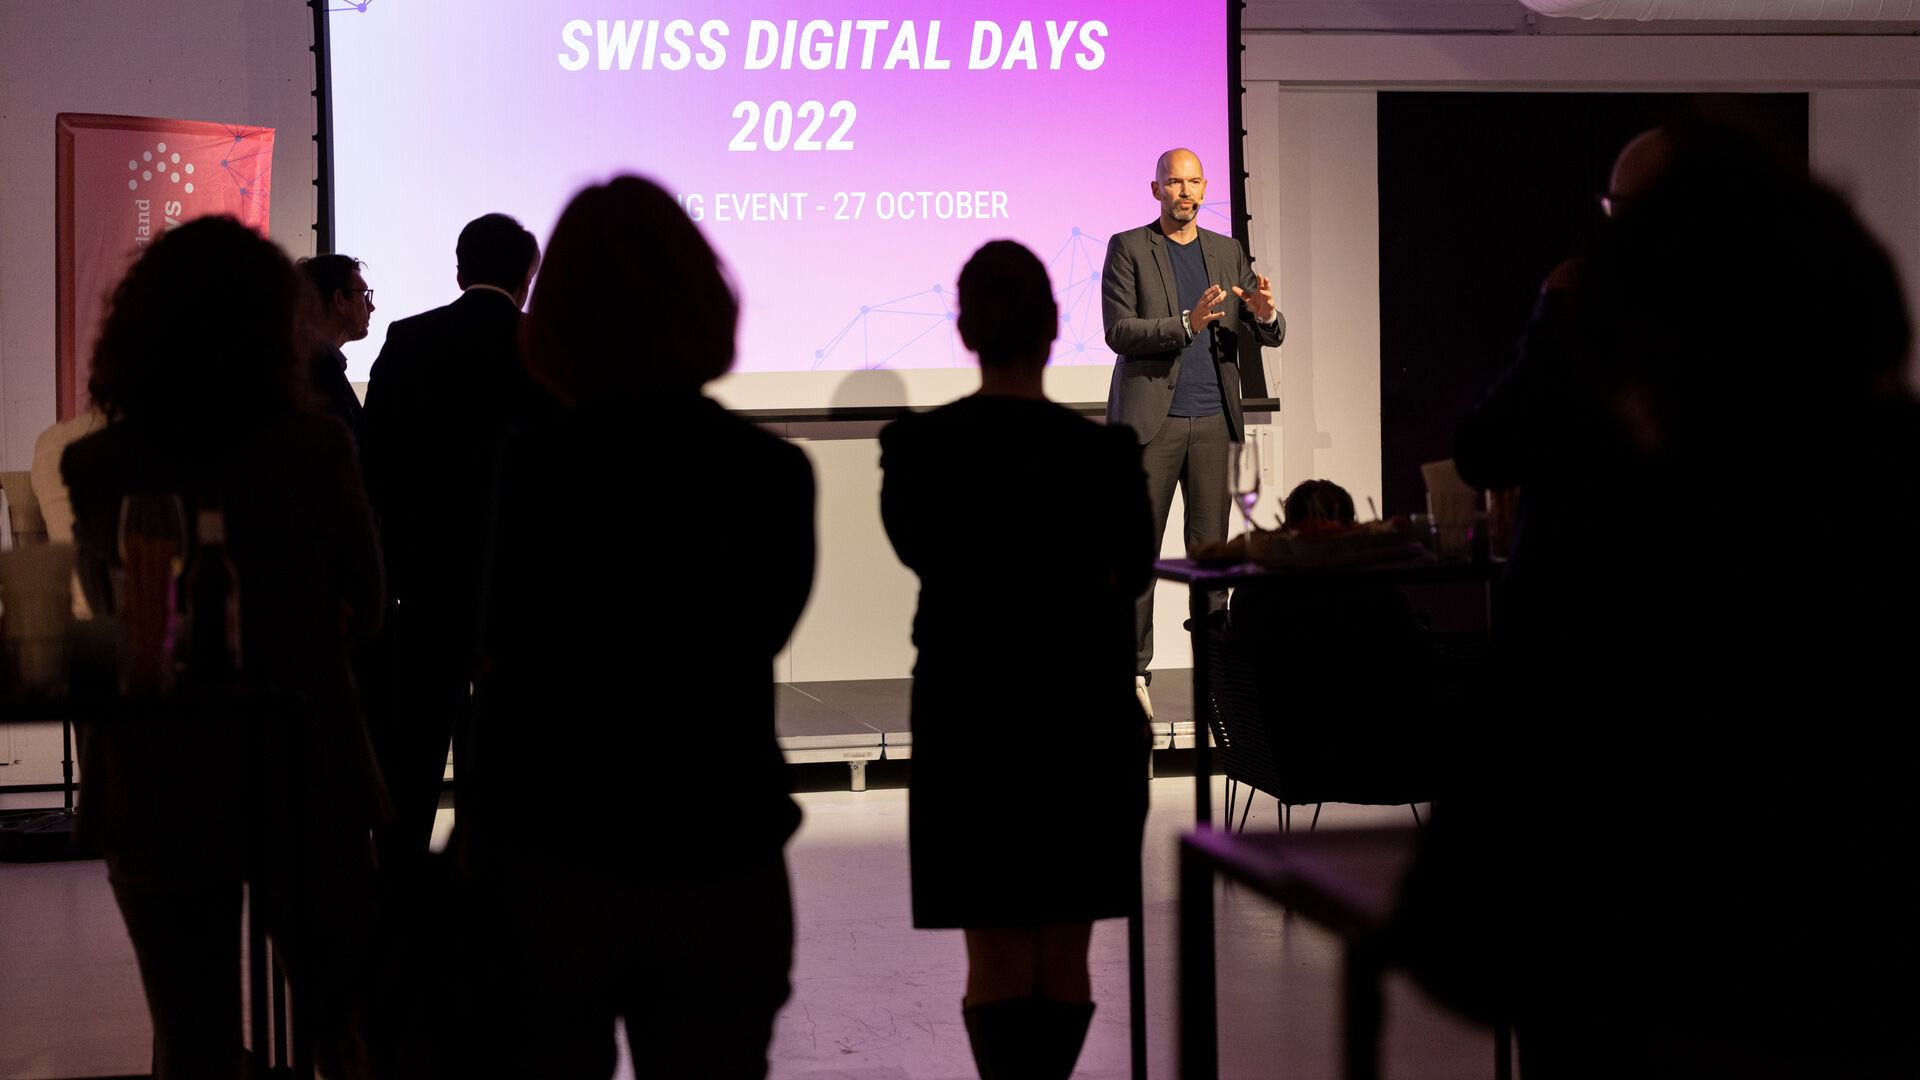 Swiss Digital Days: evenimentul de închidere a „Swiss Digital Days” 2022 la Freiruum din Zug (Zug) pe 27 octombrie